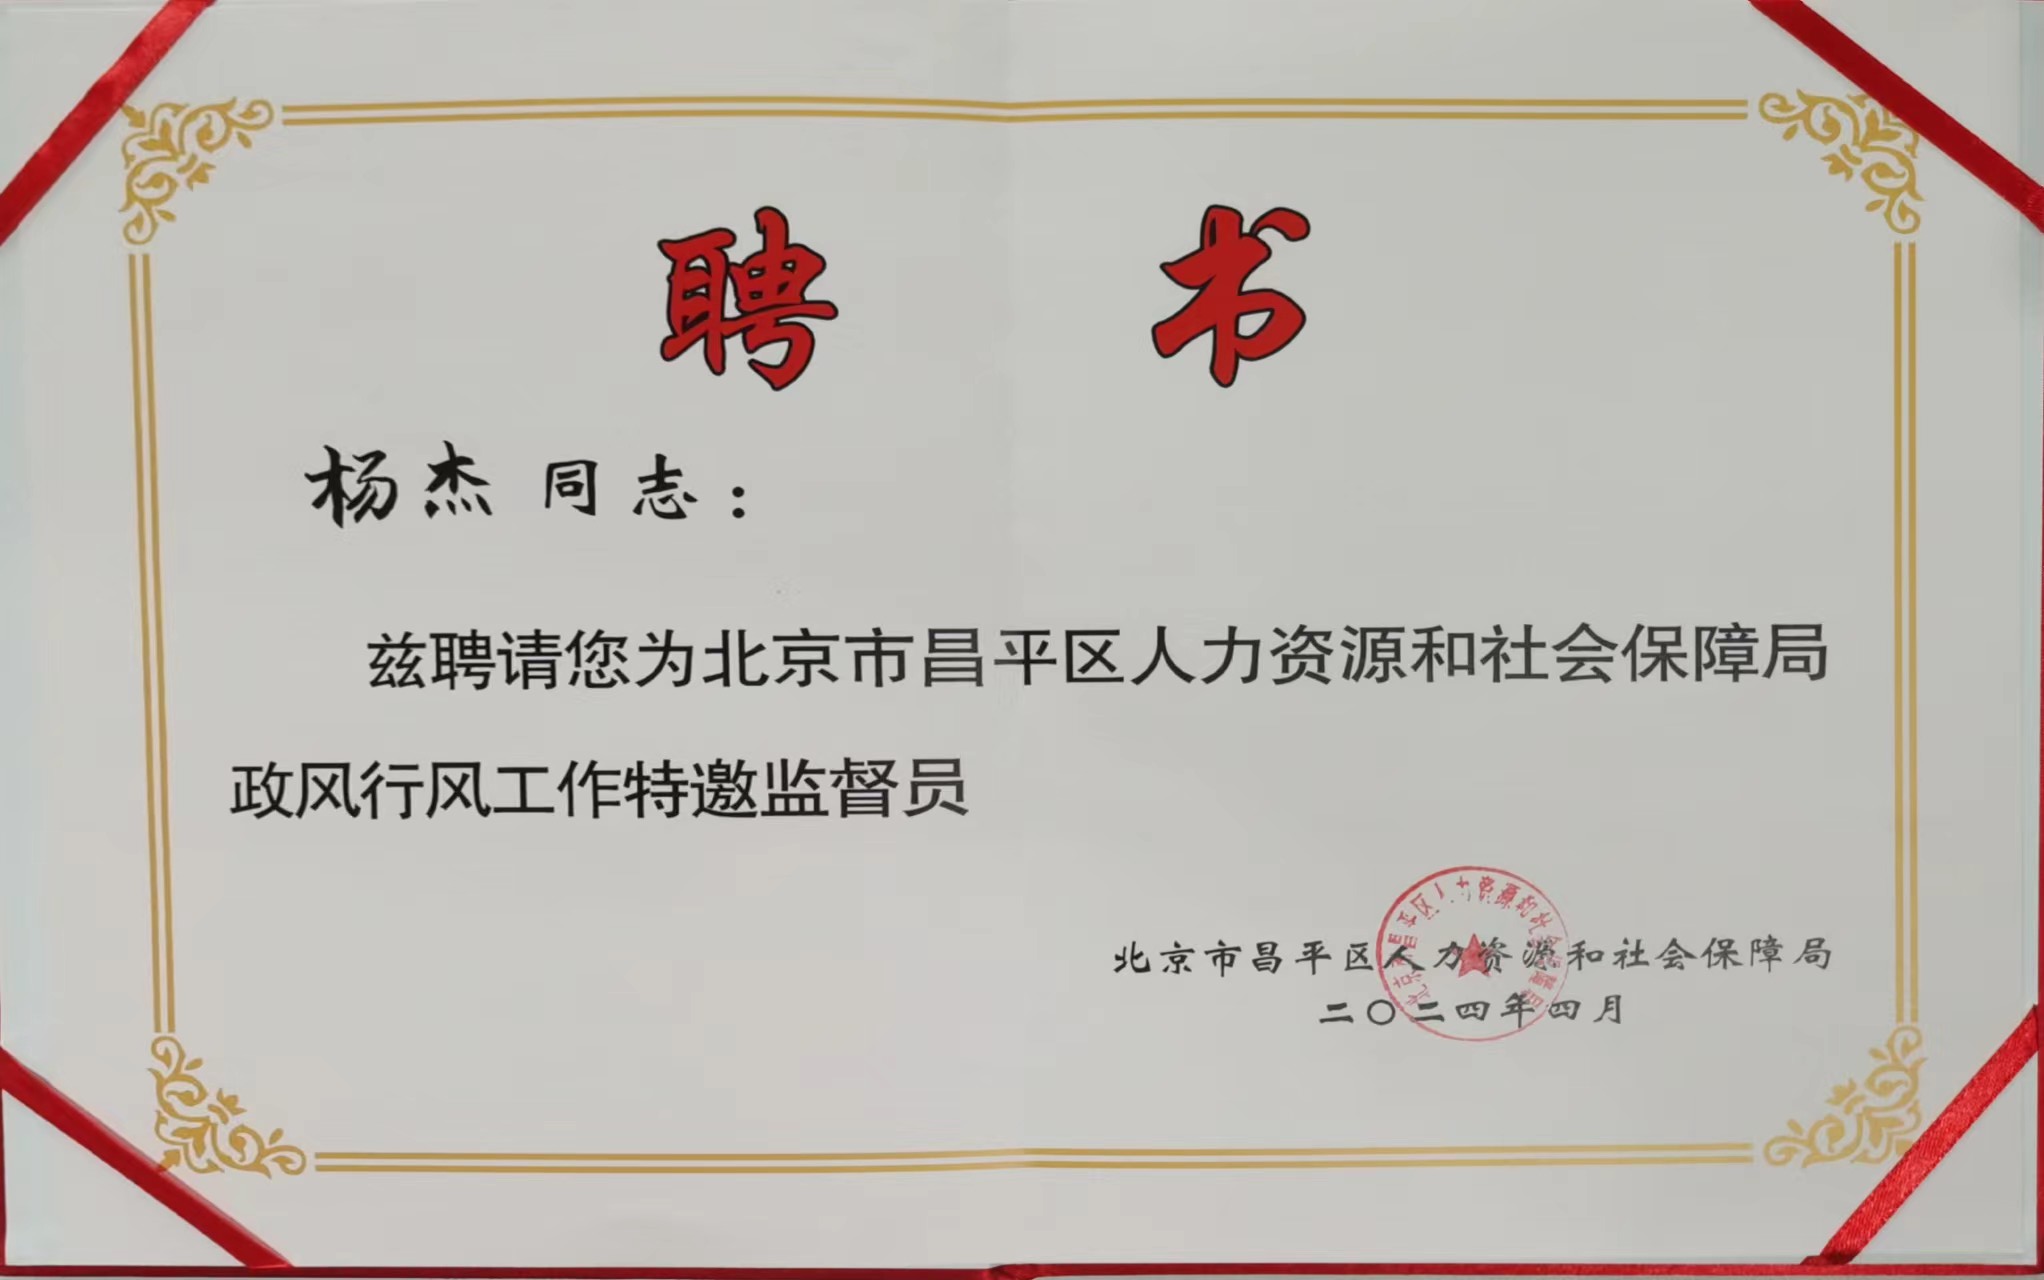 北京中创人才服务有限公司总经理杨杰被聘请为北京市昌平区人力资源和社会保障局政风行风工作特邀监督员。